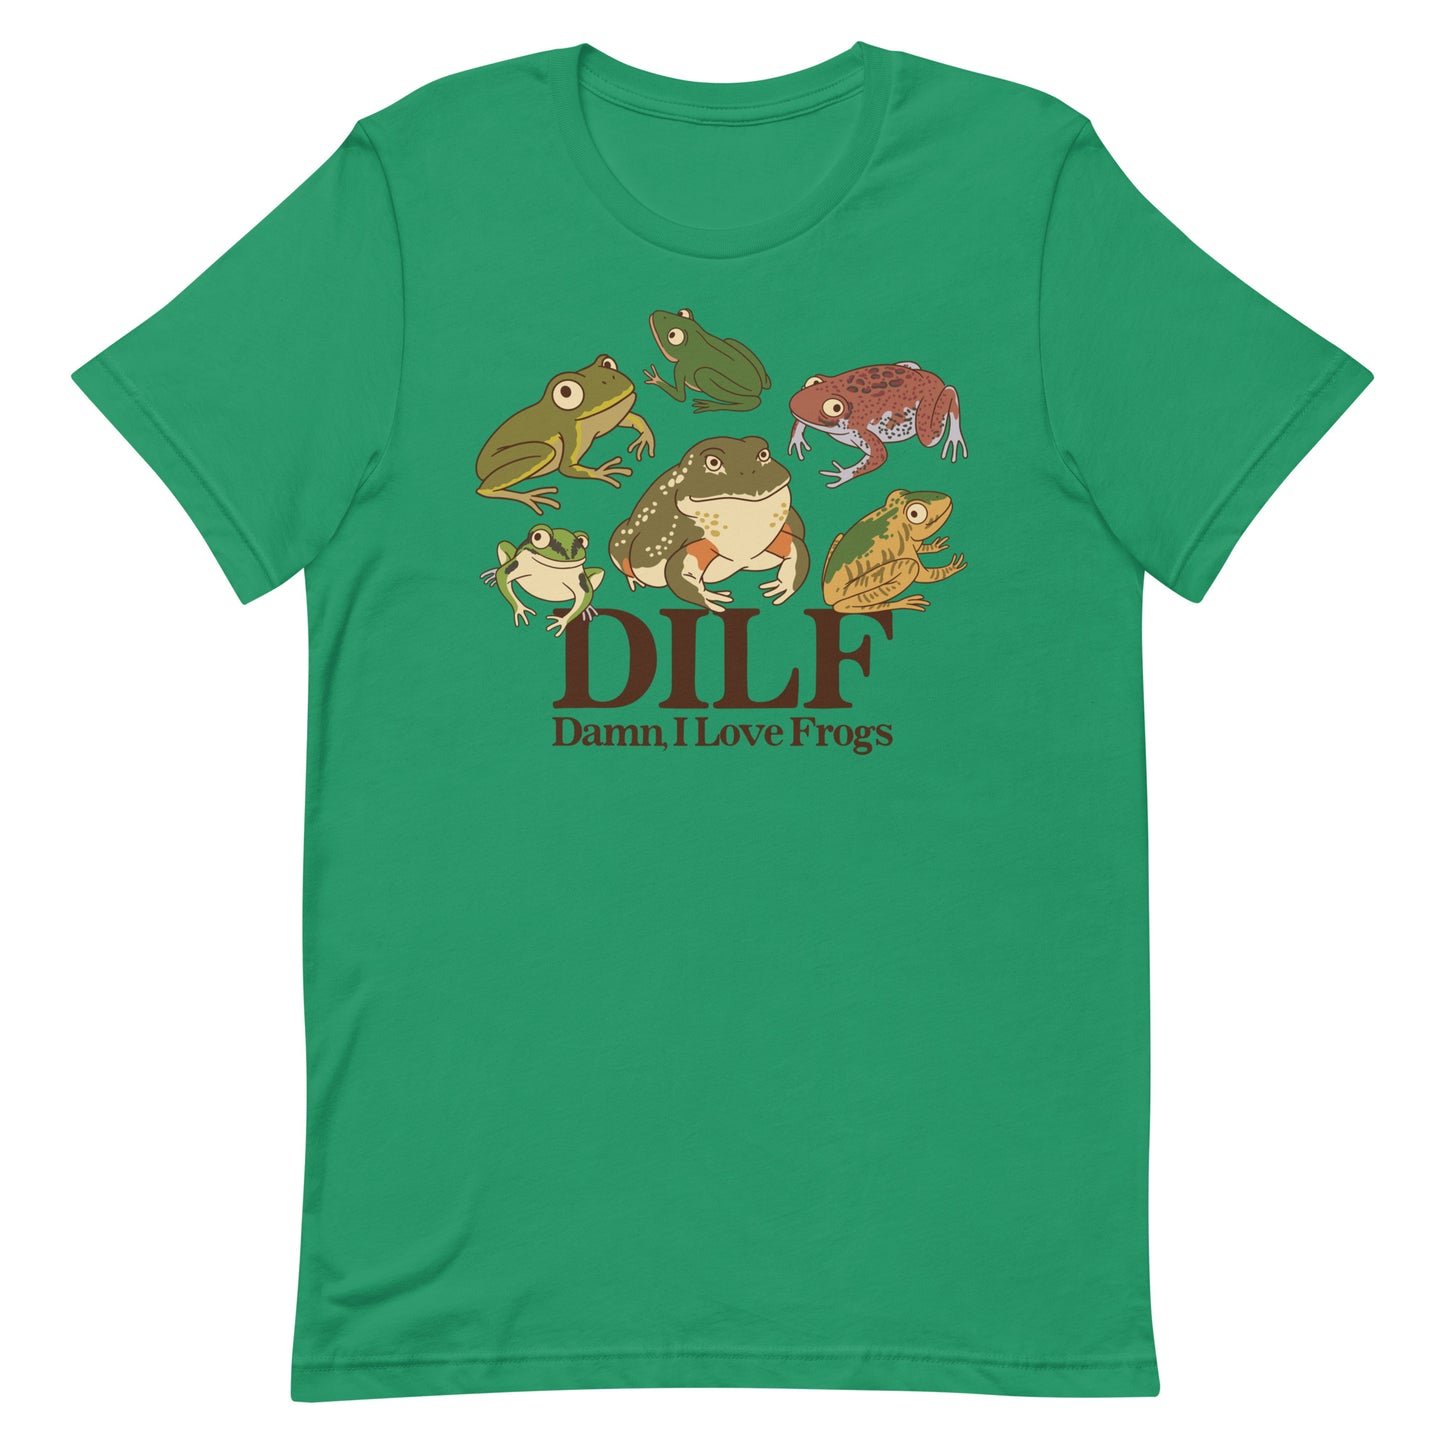 DILF (Damn, I Love Frogs) Unisex t-shirt